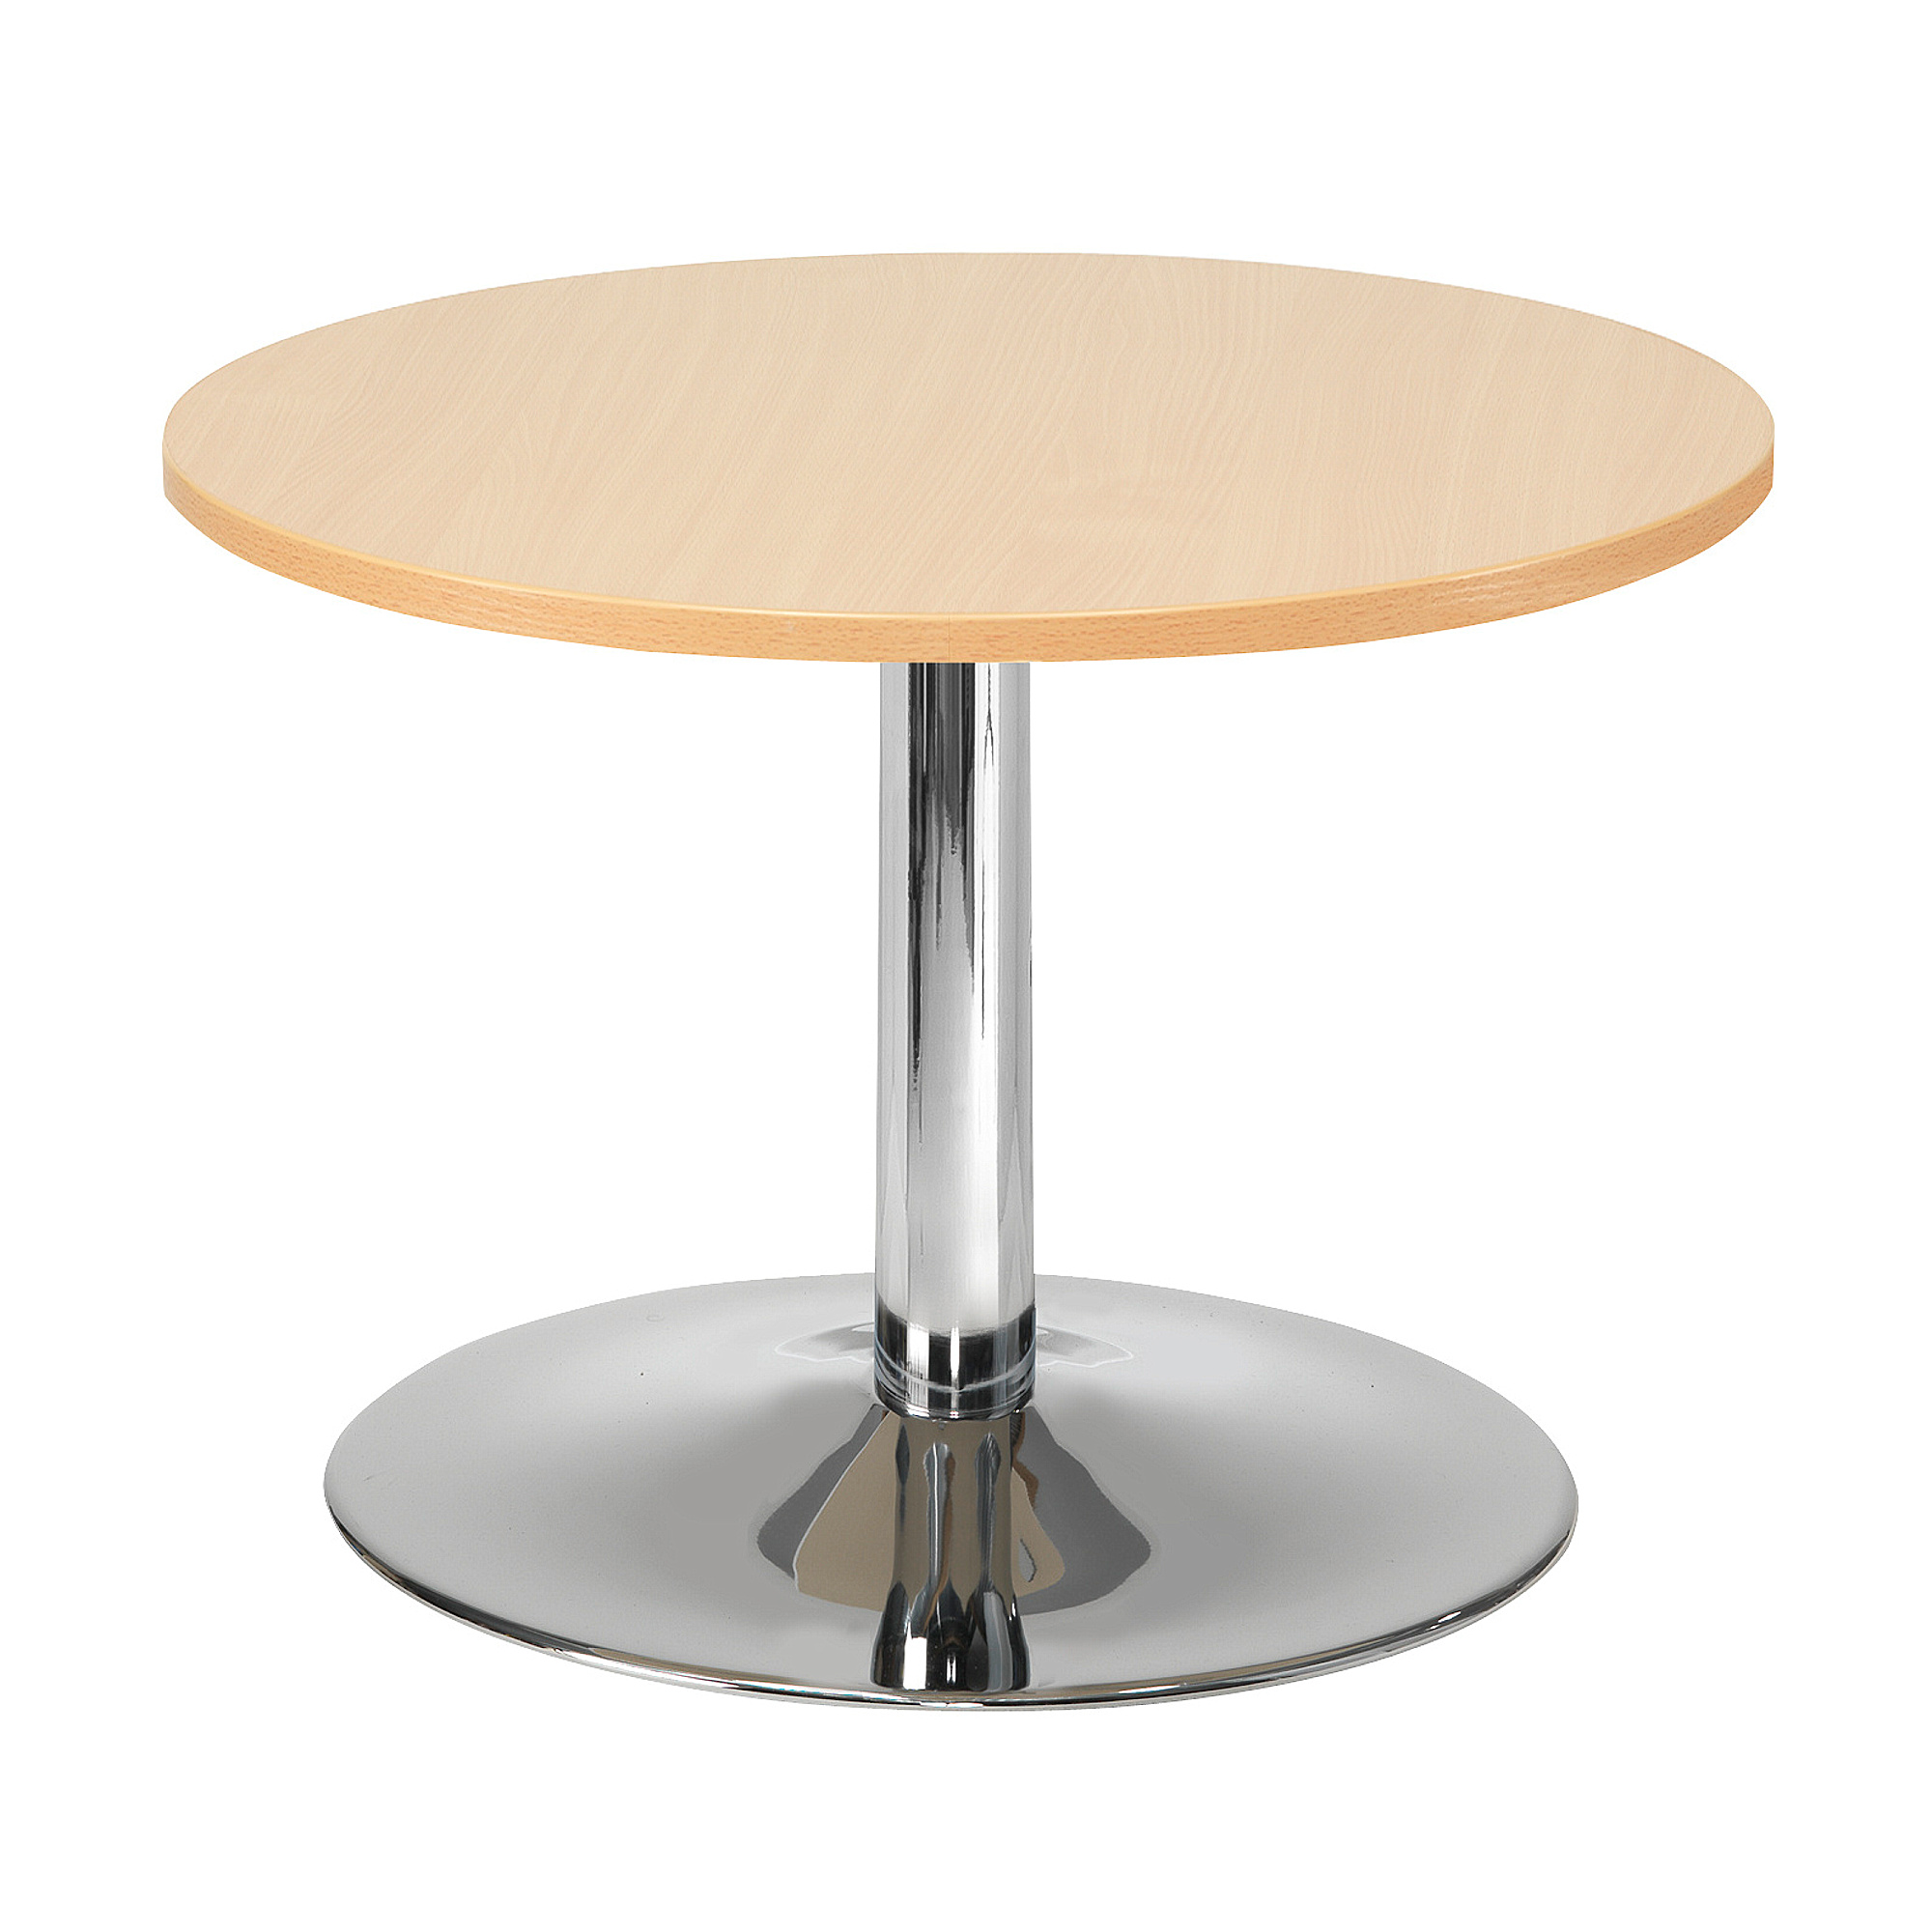 Konferenční stolek MONTY, Ø700 mm, buk/chrom,